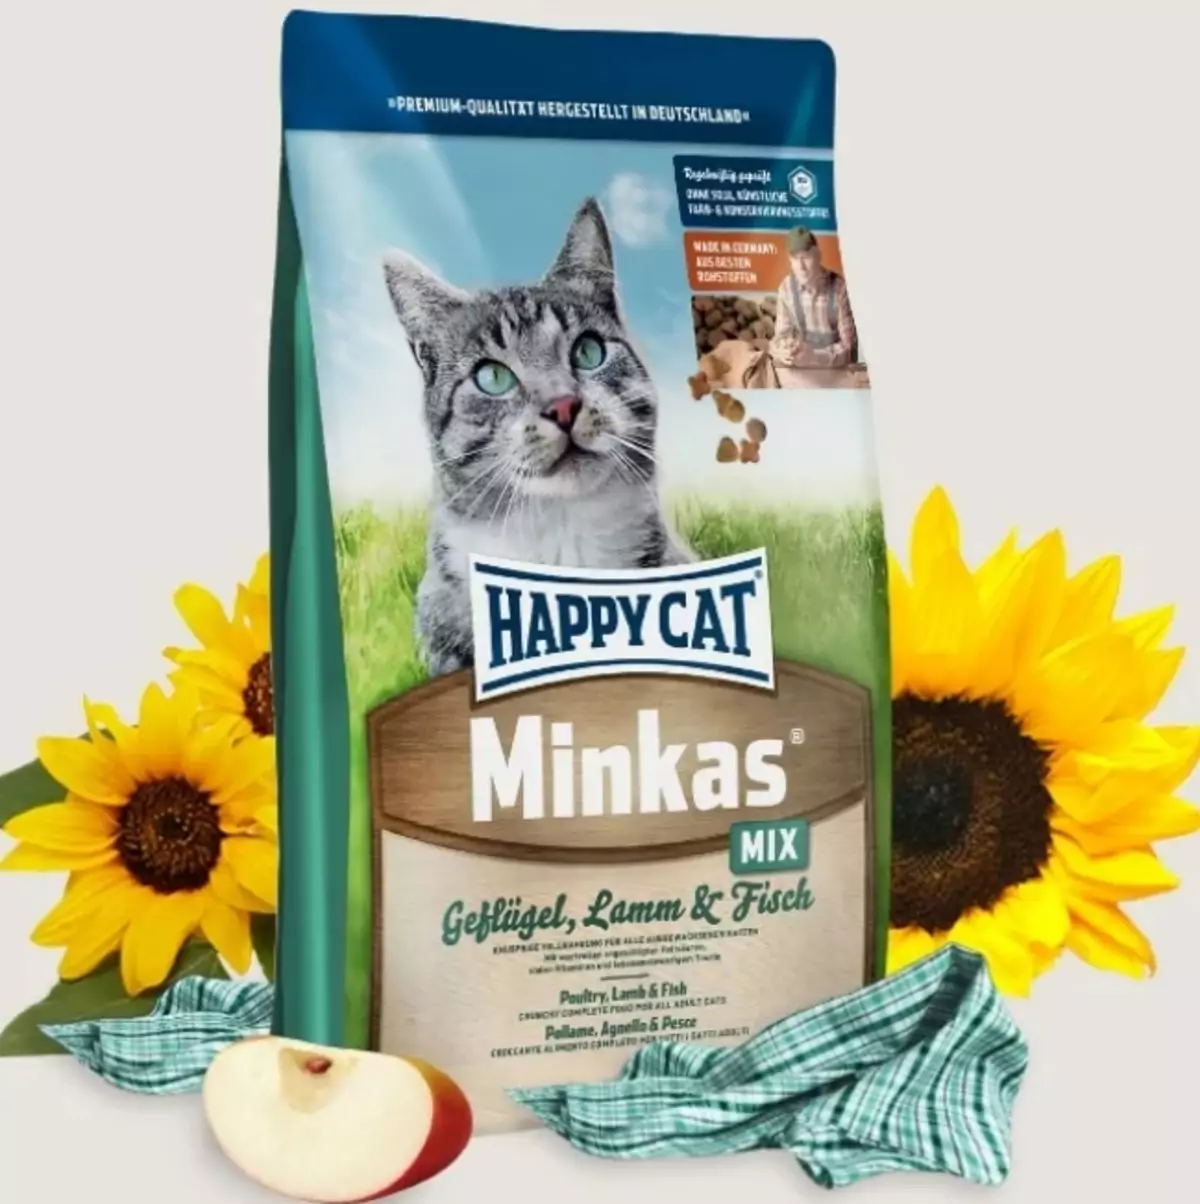 Happy Cat Cat Feed: de gearstalling fan wiet en droech iten foar kittens en sterilisearre katten, iten foar catrated katten. Resinsjes fan beoordelingen 22070_22